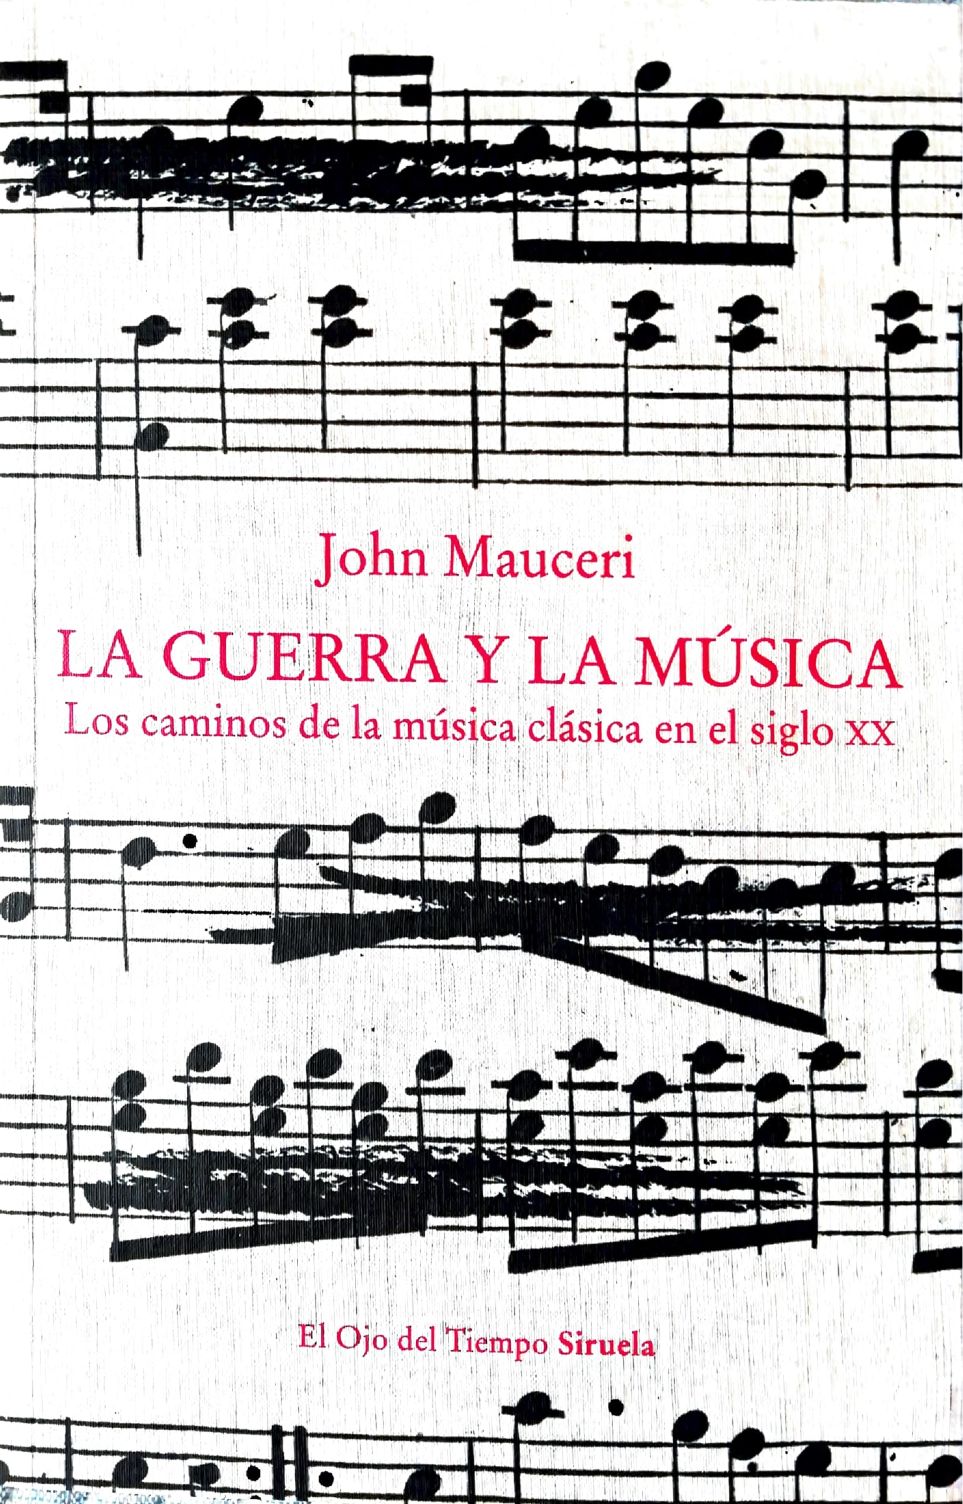 Crtica del libro La guerra y la msica. Los caminos de la msica clsica en siglo XX de John Mauceri